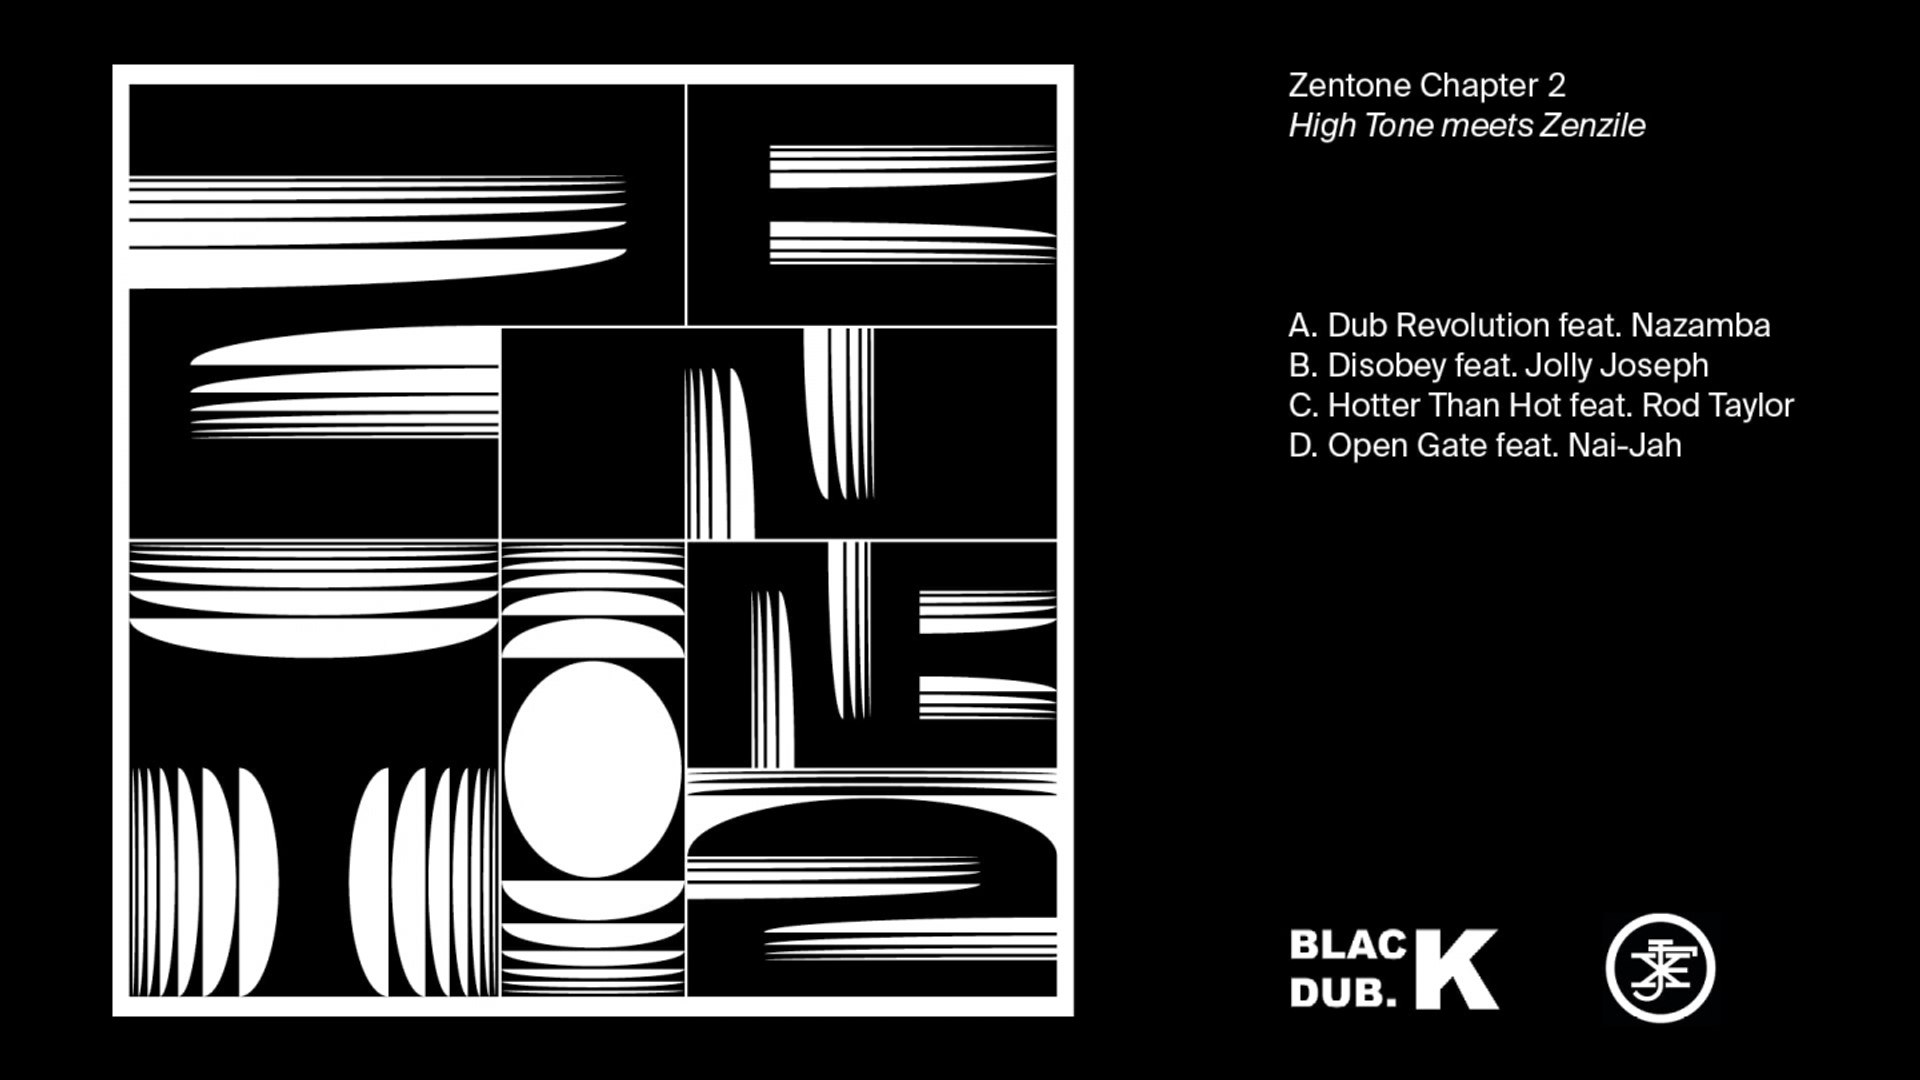 Zenzile Zentone album. Higher Tone. High Tone ‎– Remixed - Dub to Dub 2 LP. Zenzile meet Cello album. High tone